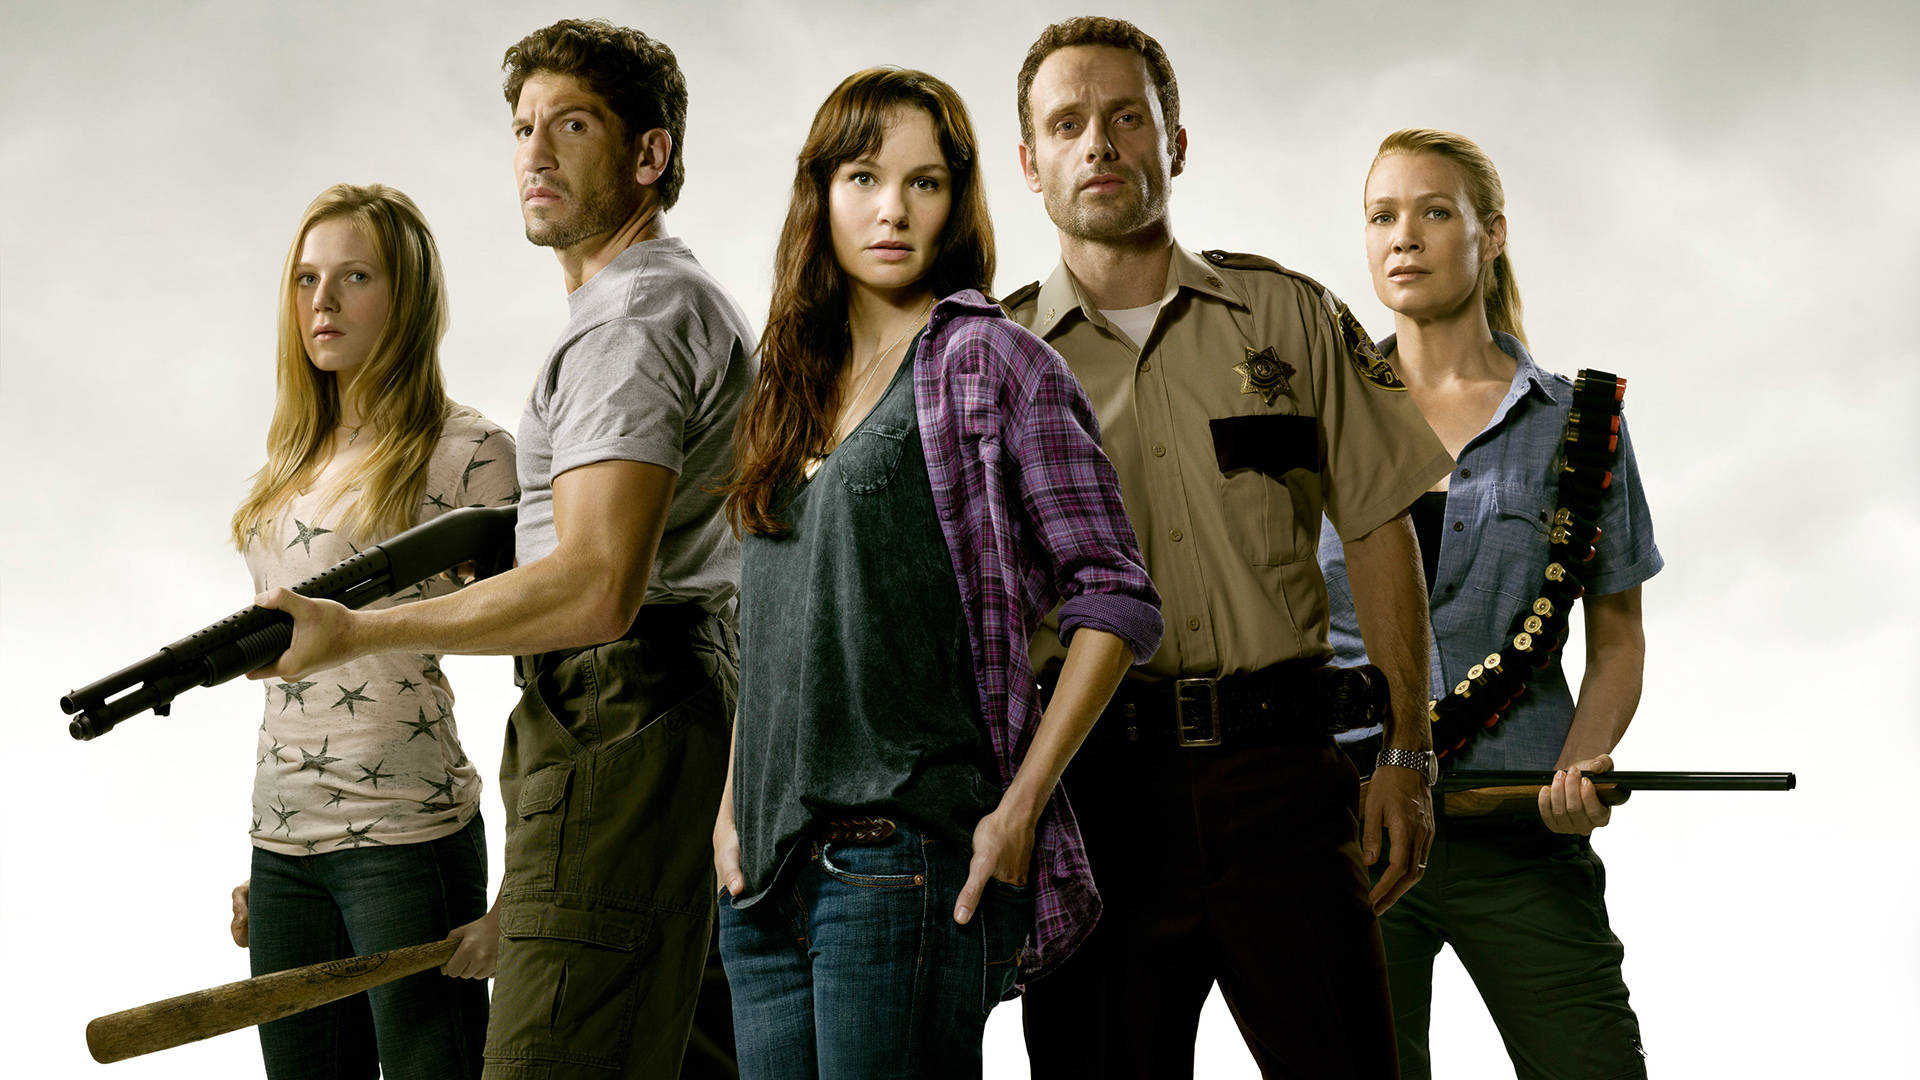 The Walking Dead Season 1 Poster